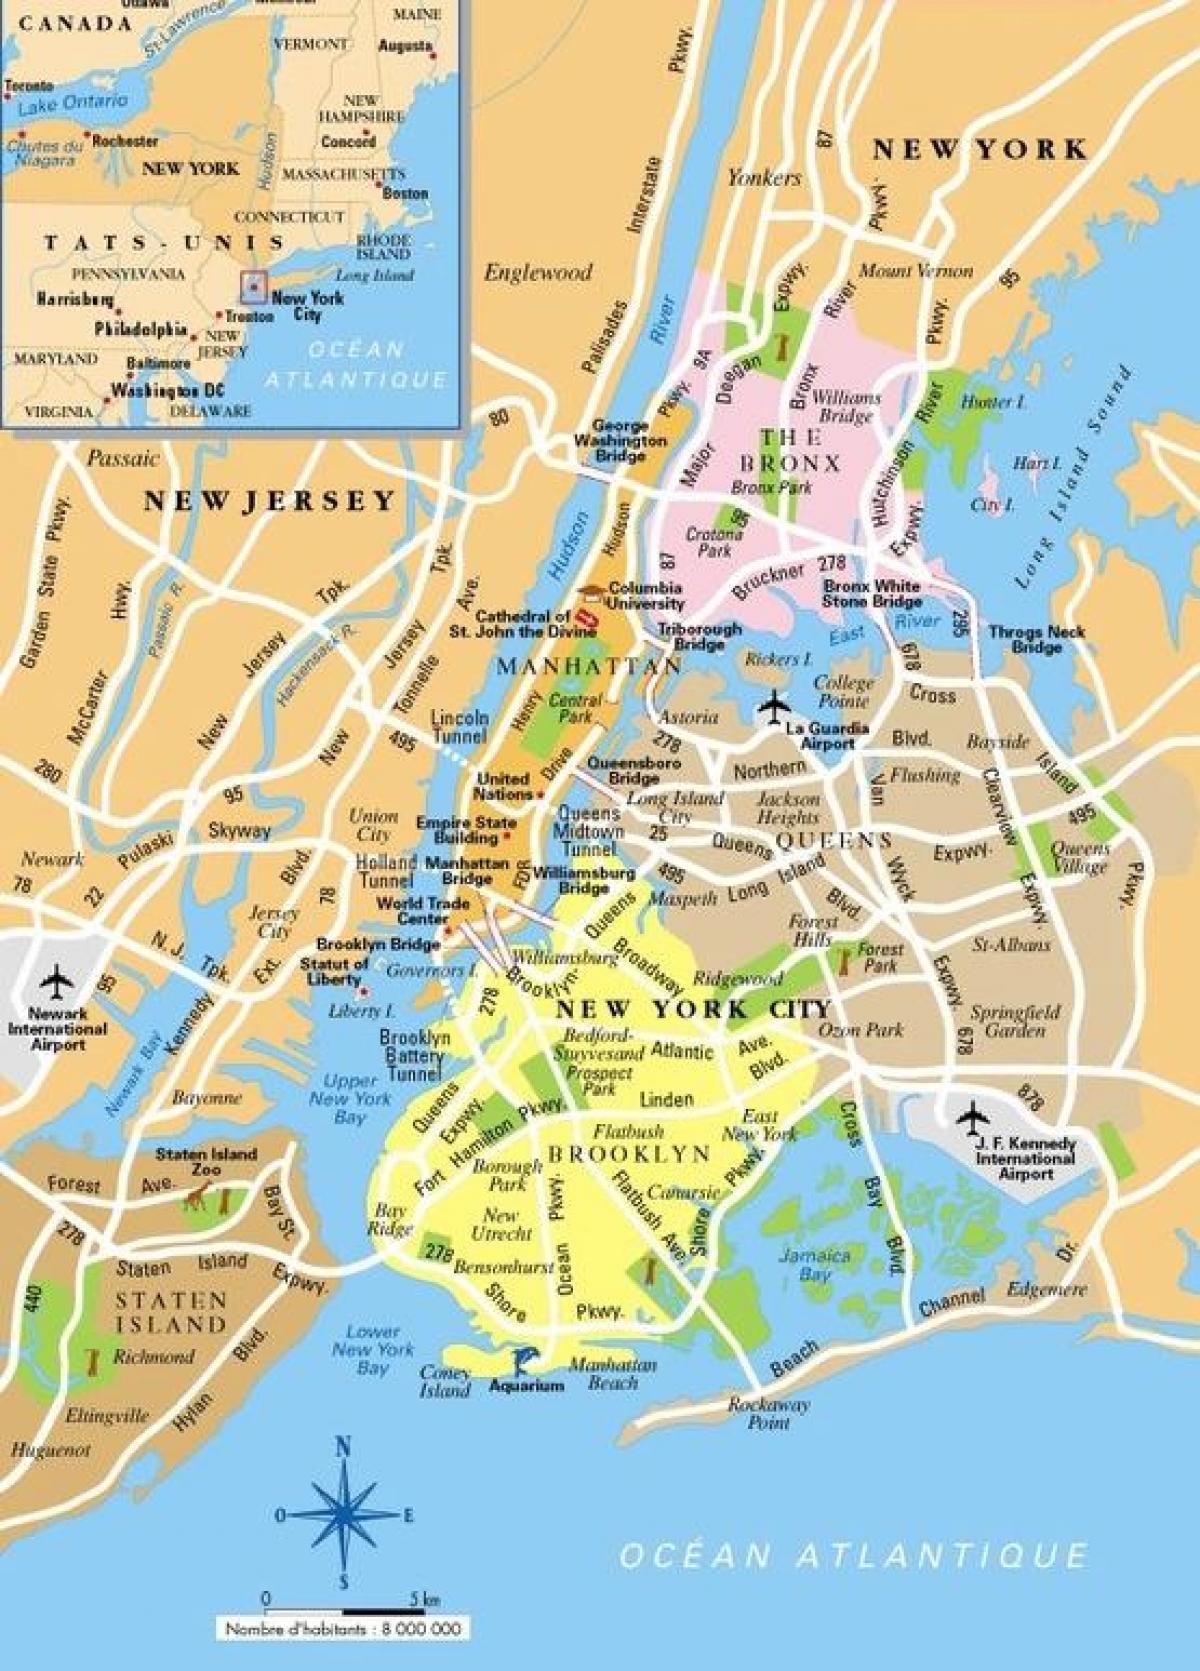 可打印的纽约地图